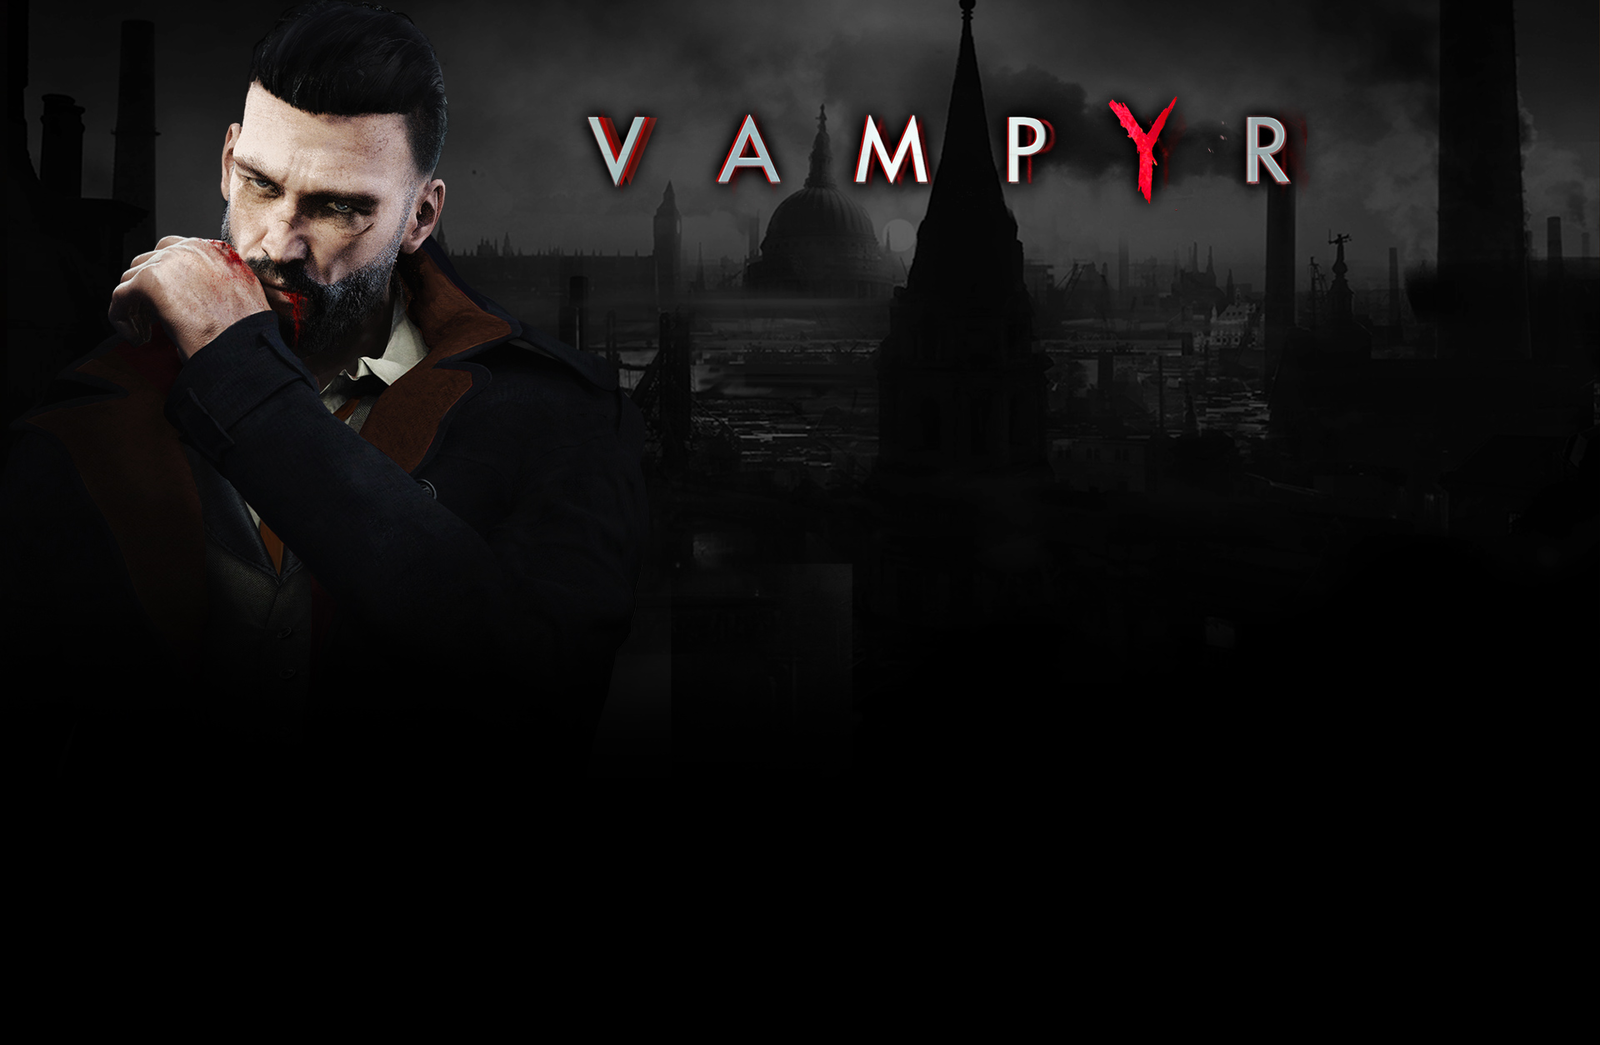 Vampyr - My, Vampyr, Games, Help, Not understood, Explanation, Plot